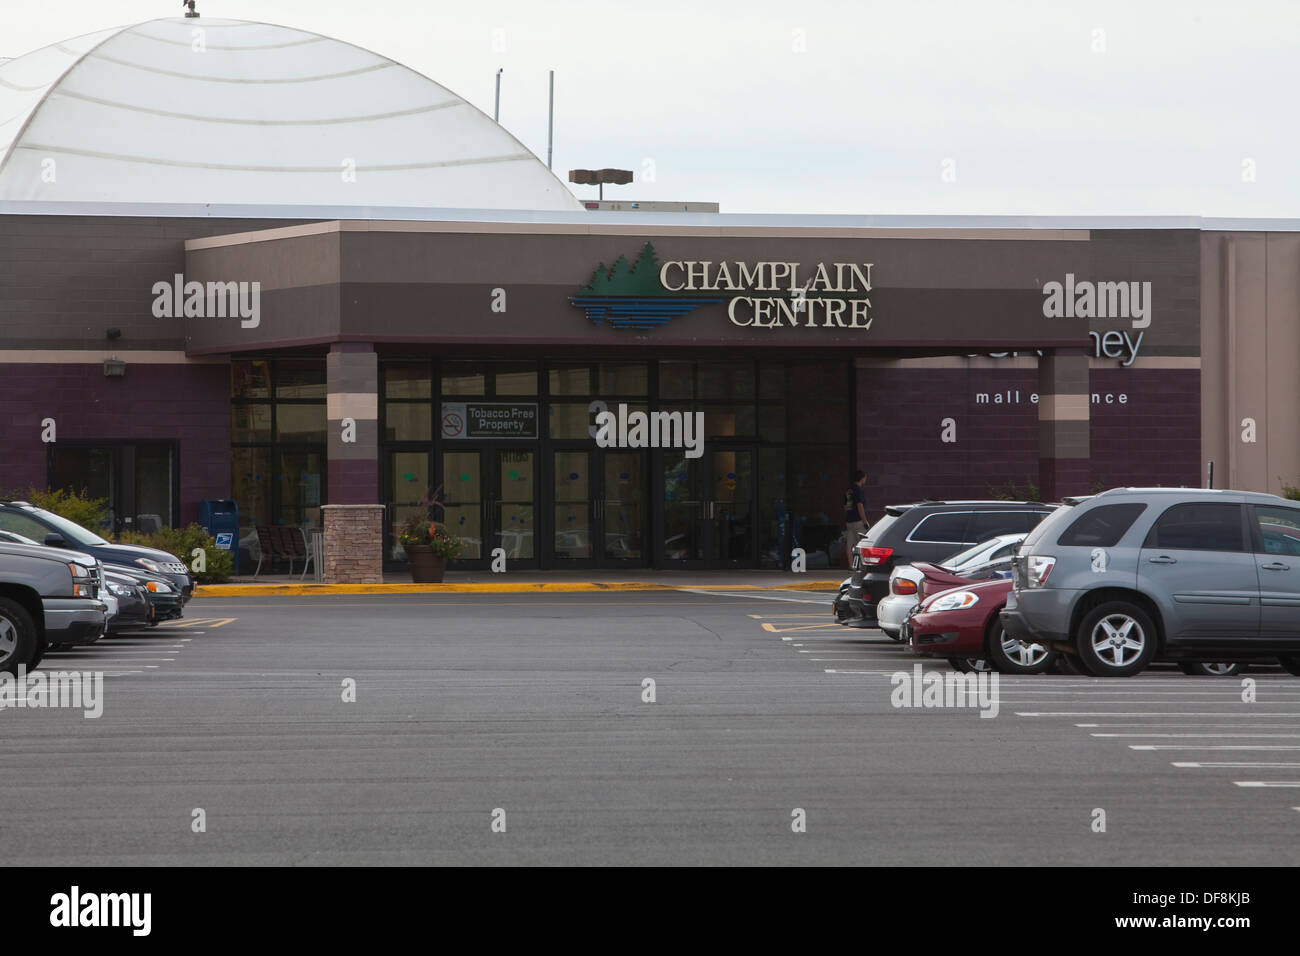 Champlain centros shopping mall está retratado en Plattsburgh, NY Fotografía de - Alamy